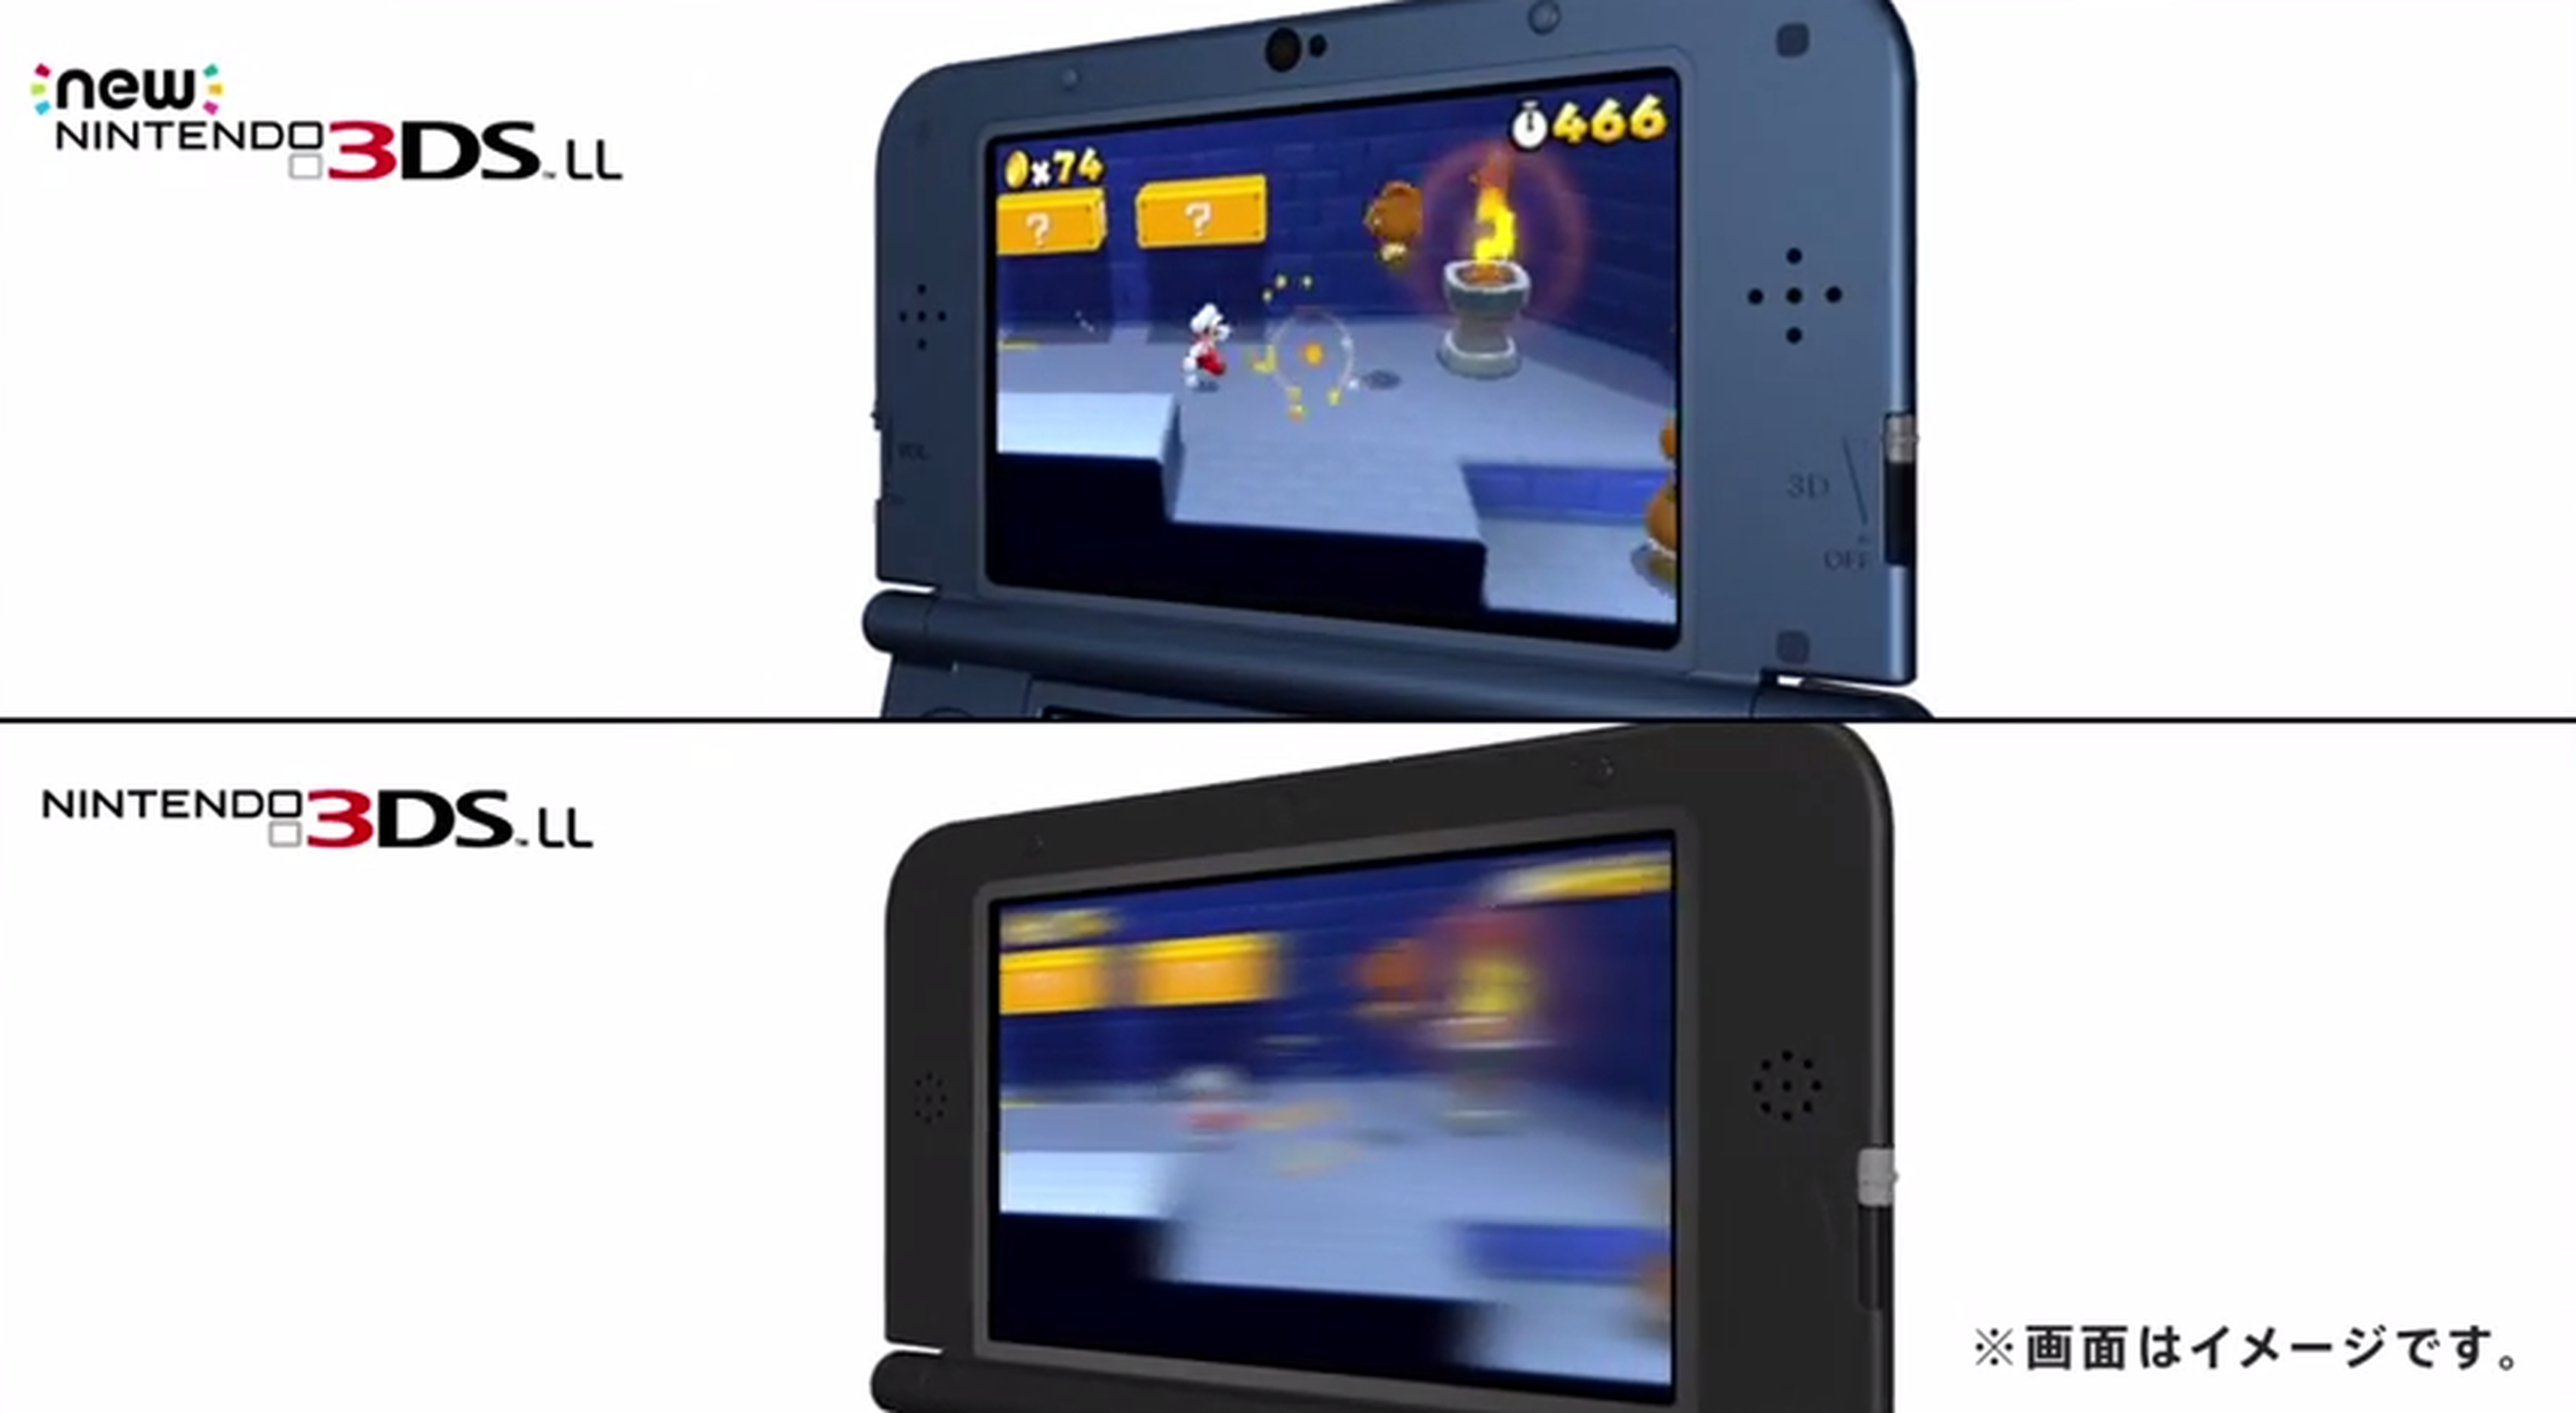 Nintendo anuncia un rediseño para 3DS y 3DS XL